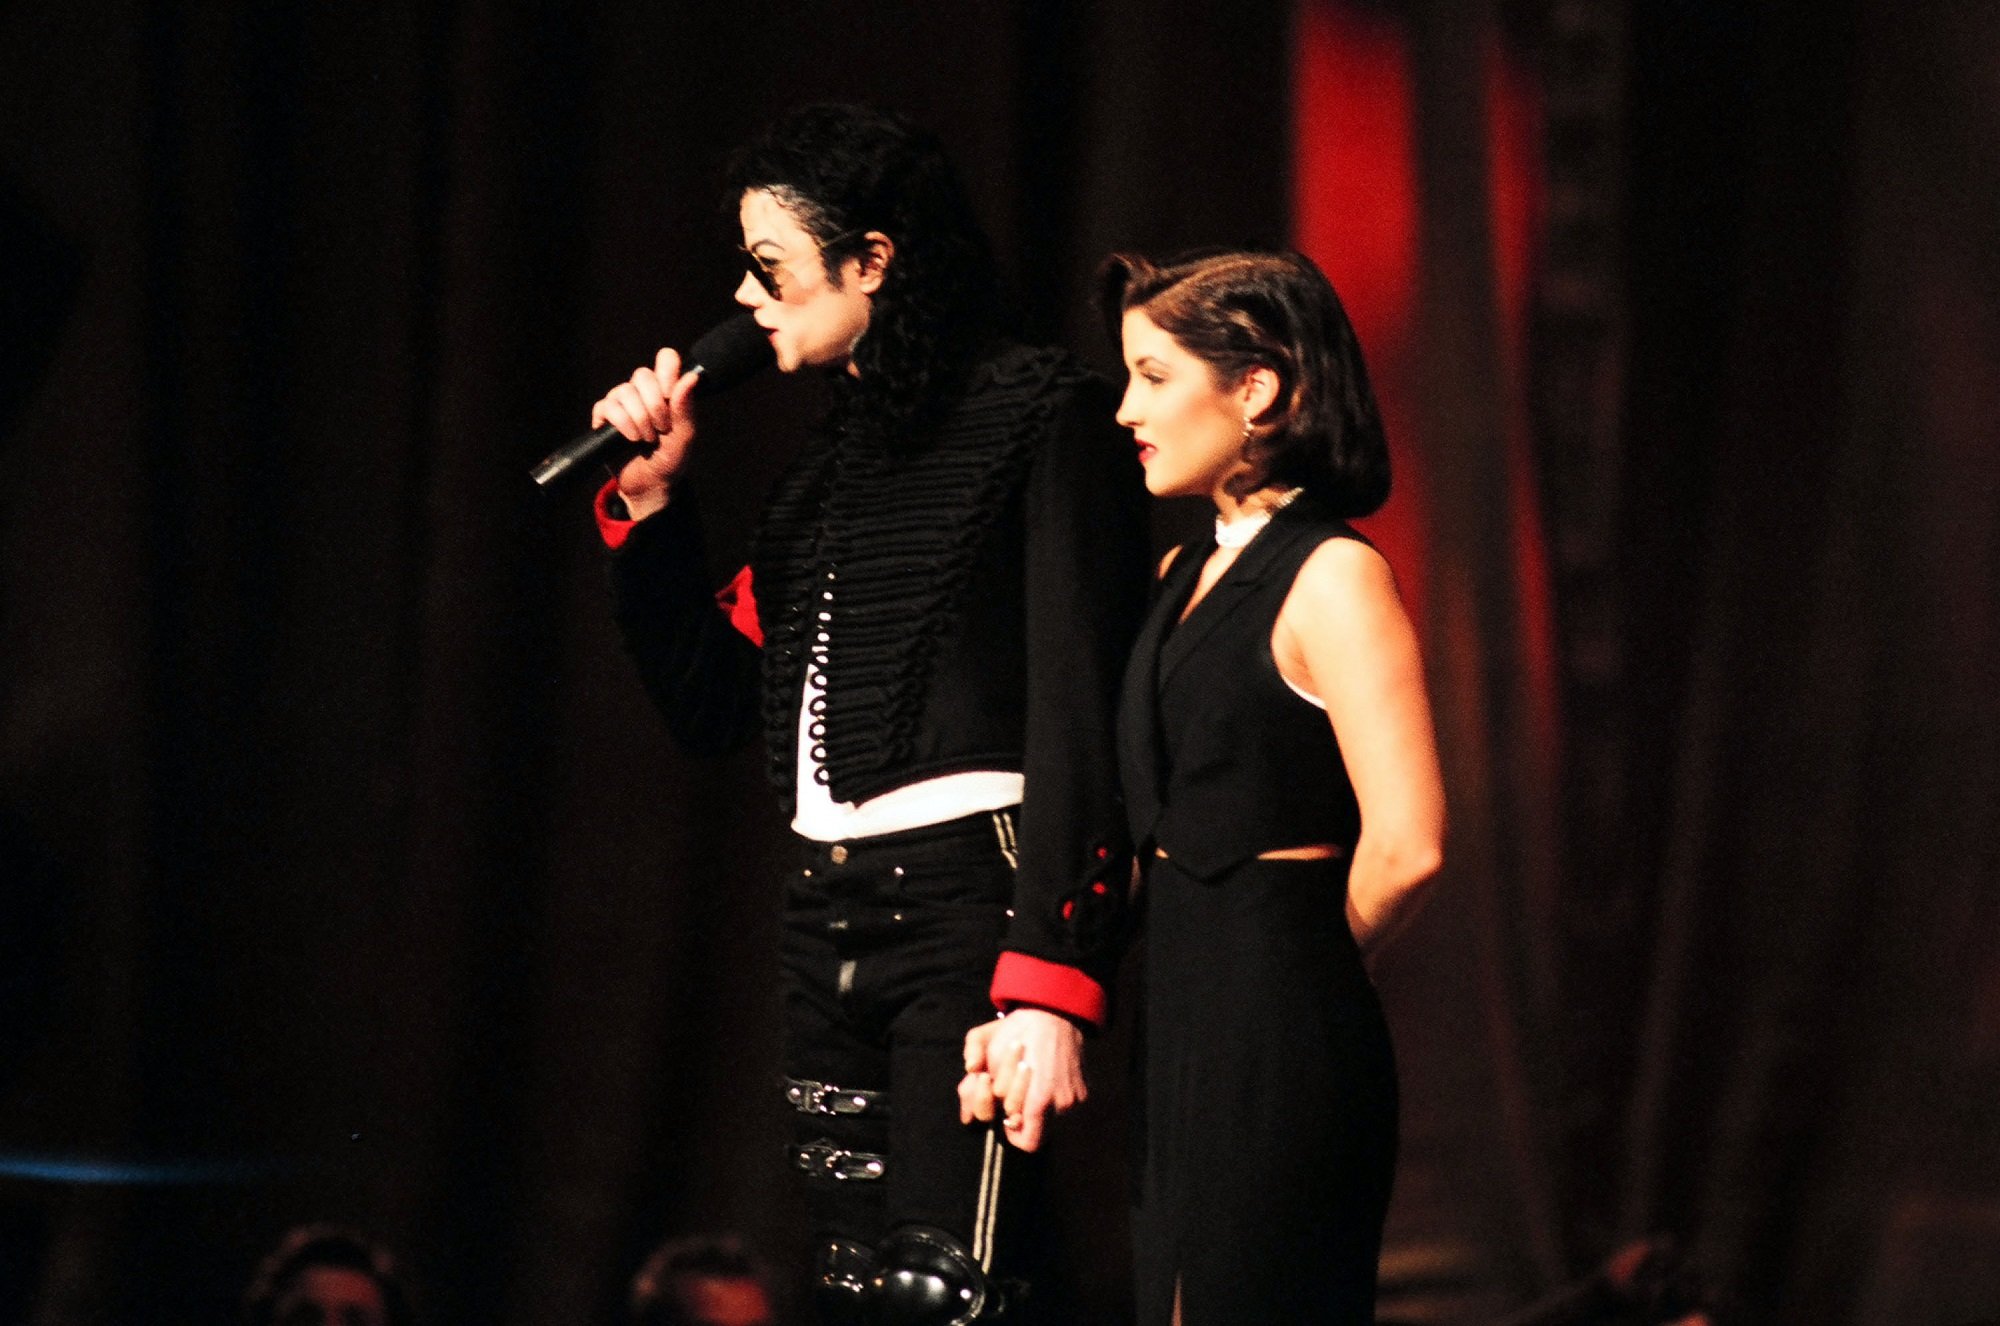 Michael Jackson and Lisa Marie Presley 